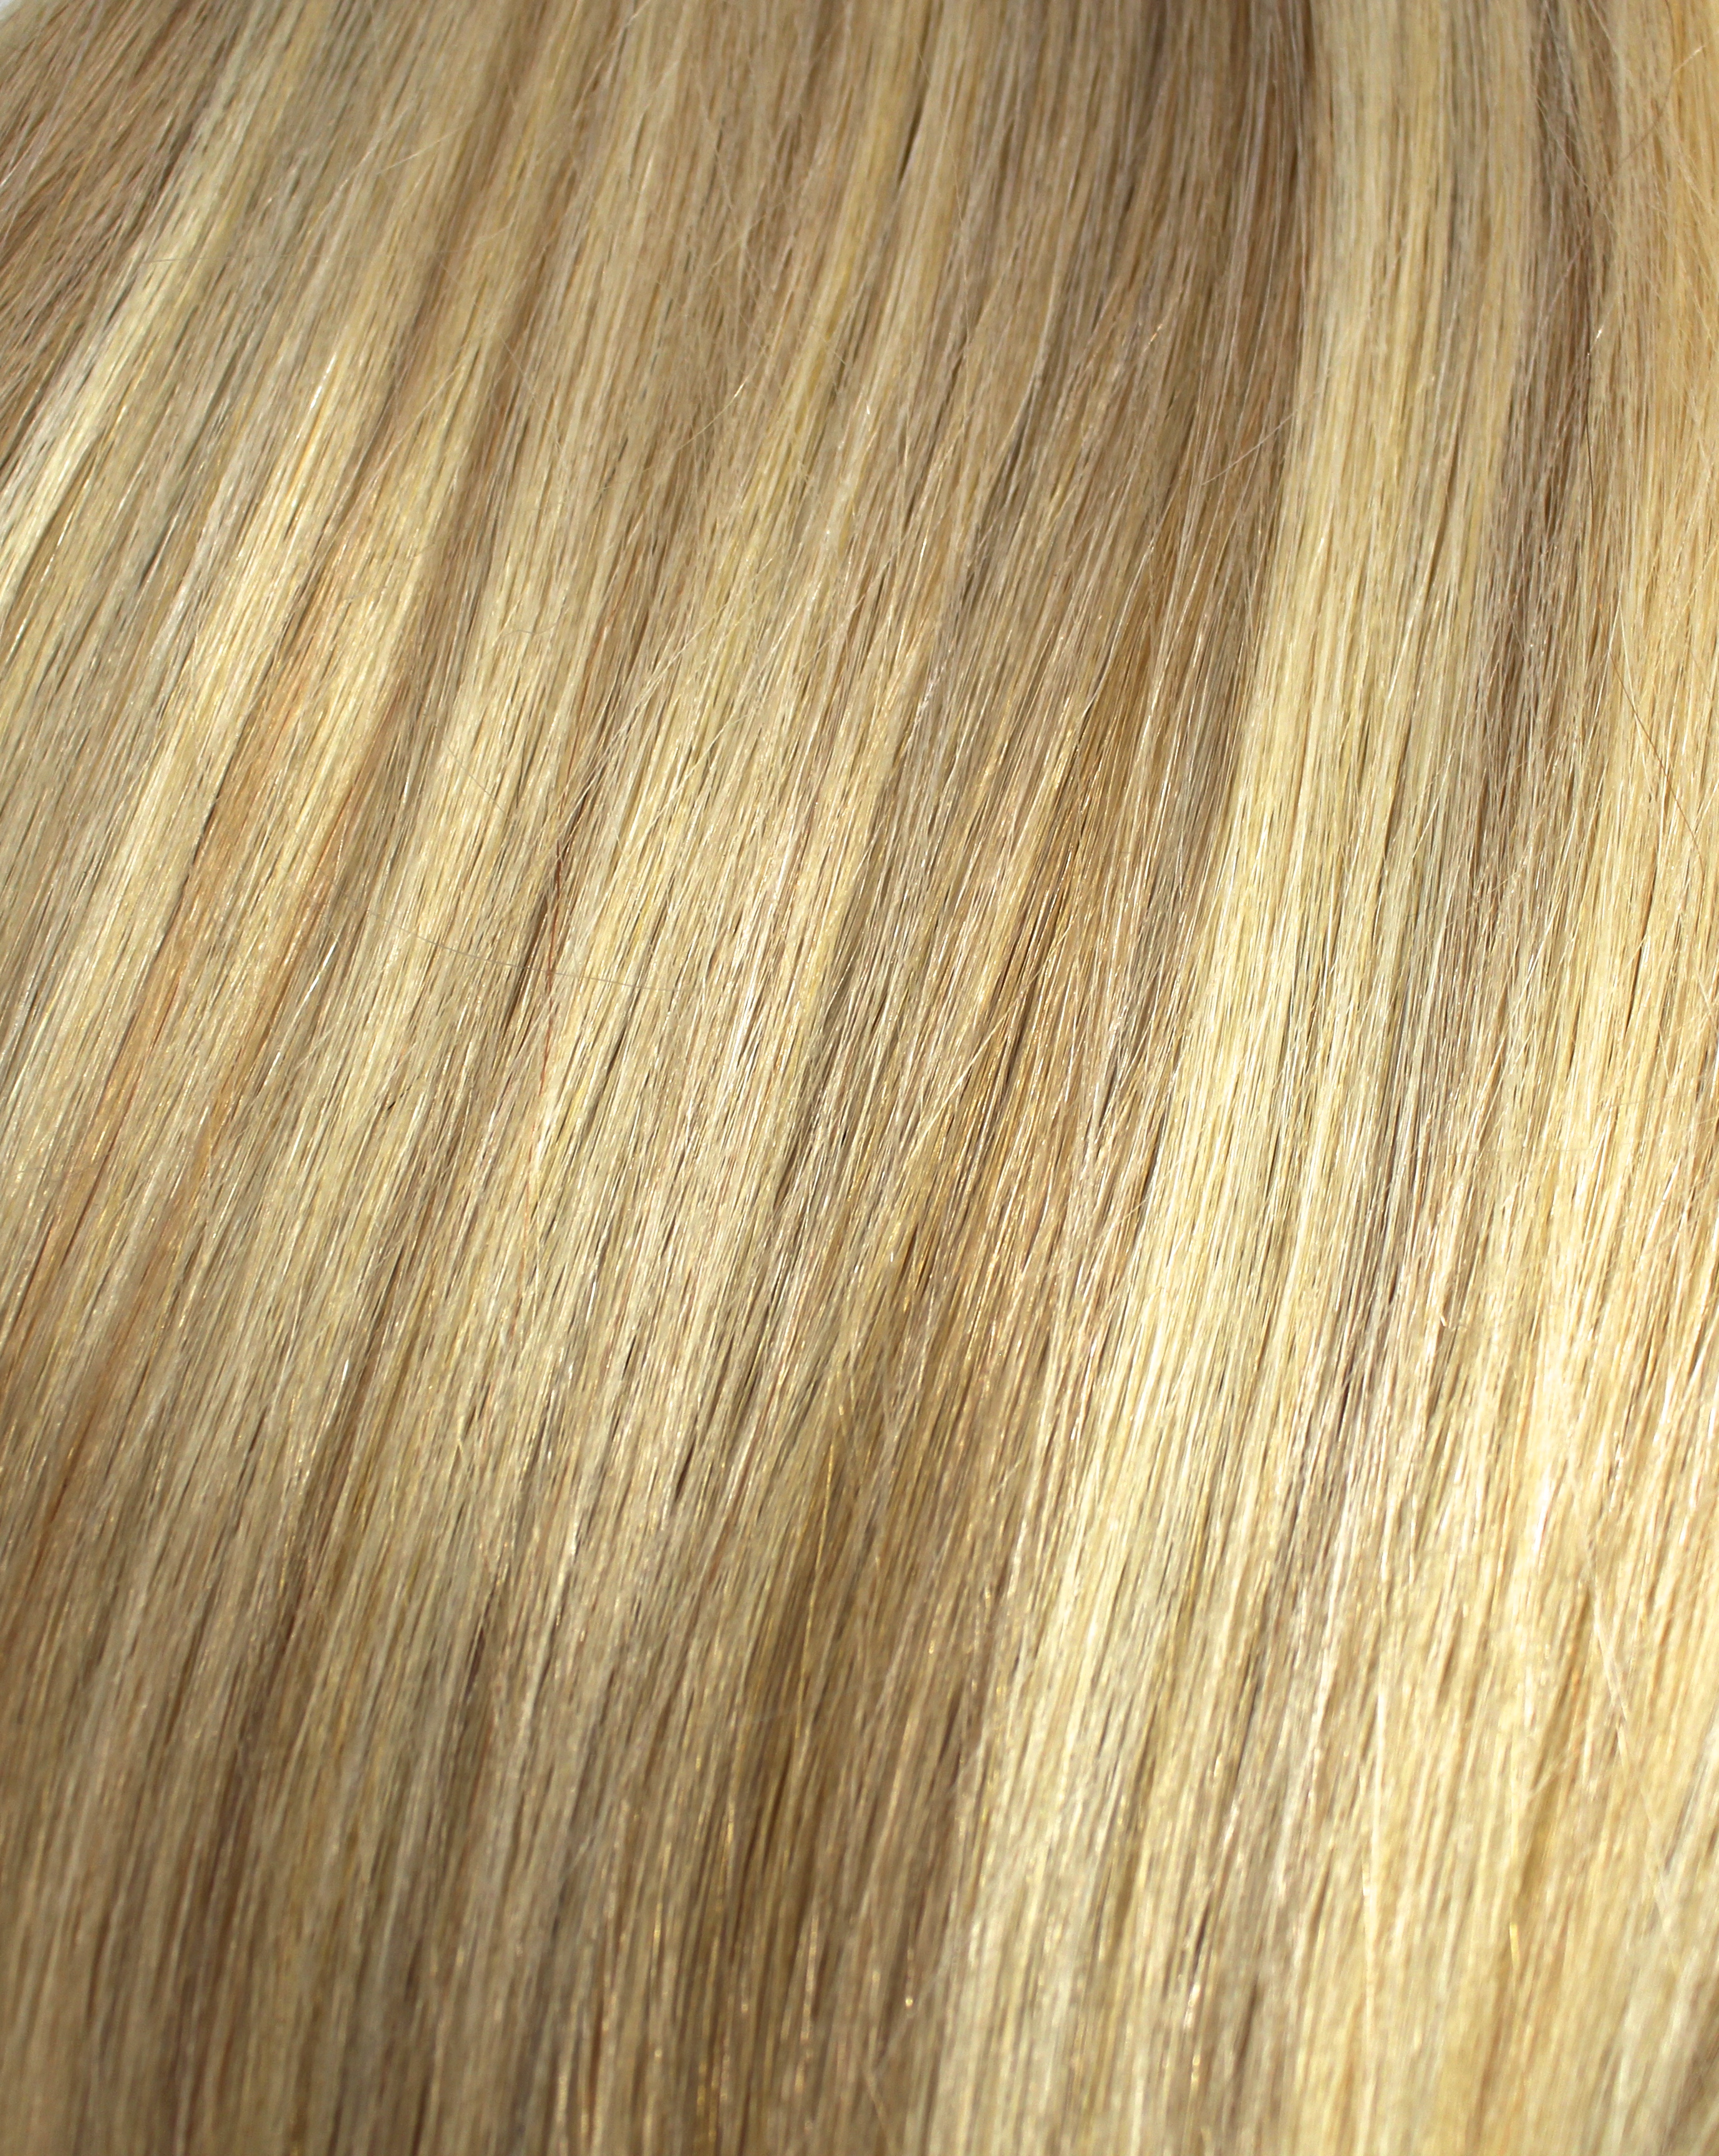 Golden Blonde Bleach Mix 27 613 Miss Flirty Hair